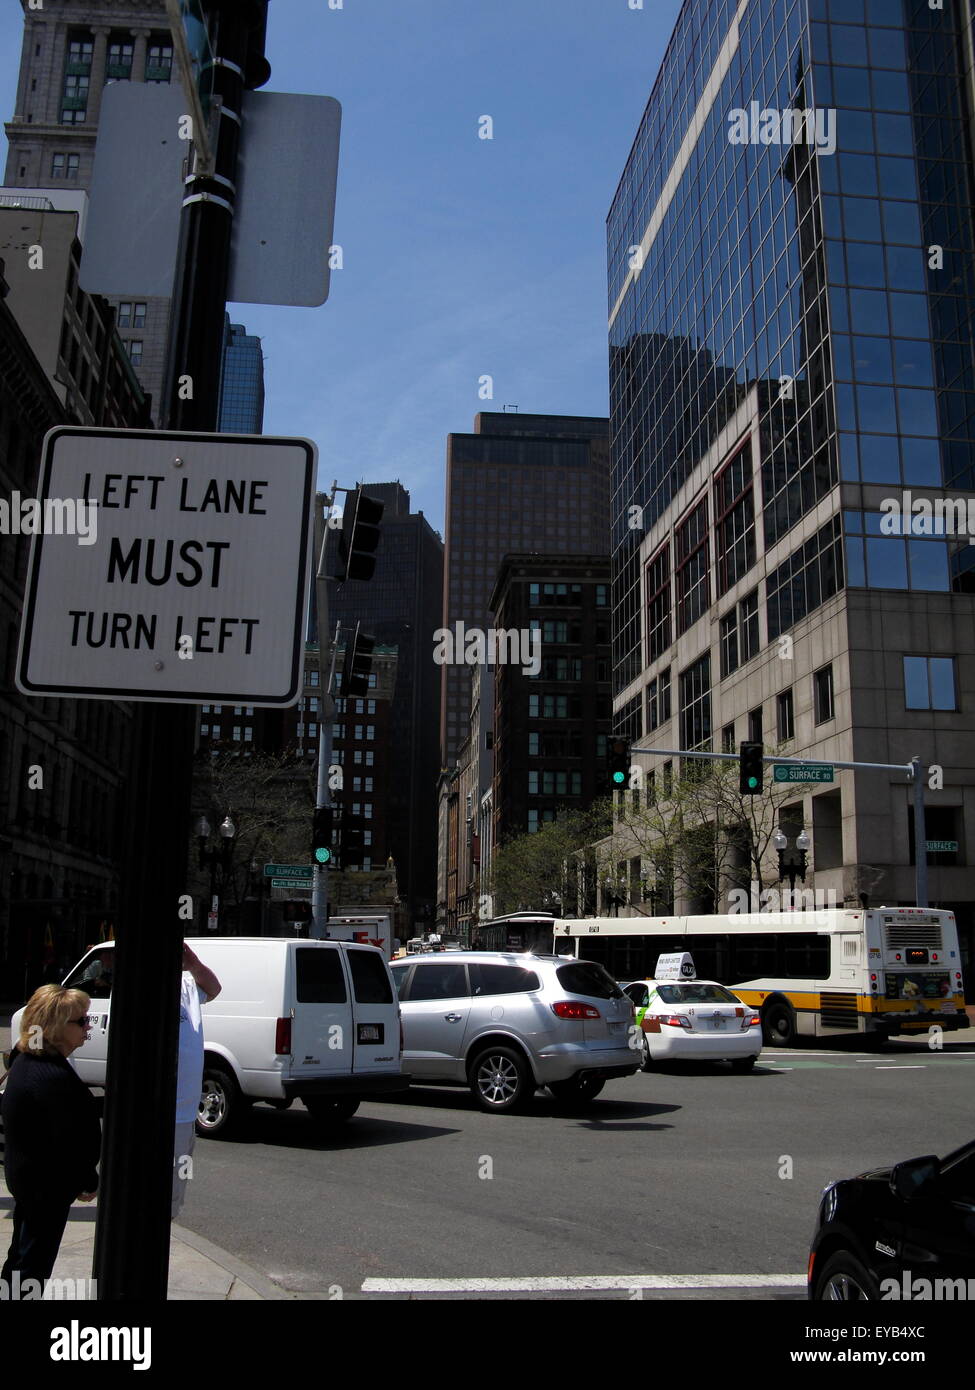 Left lane must turn left sign, Boston, Massachusetts Stock Photo